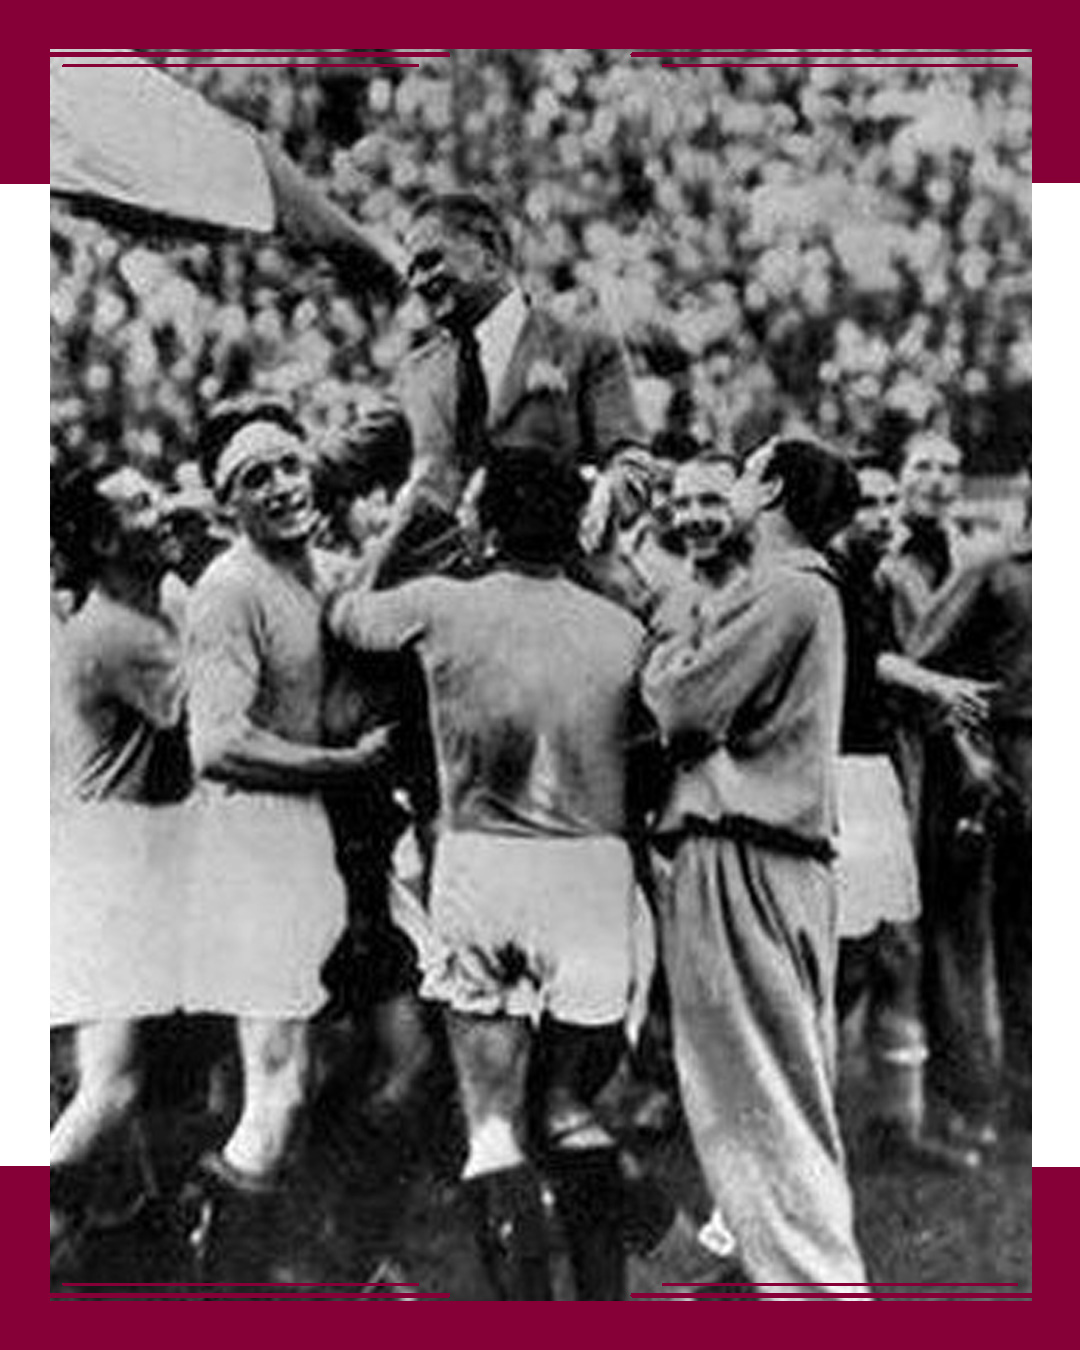 Italia, Champion in 1934